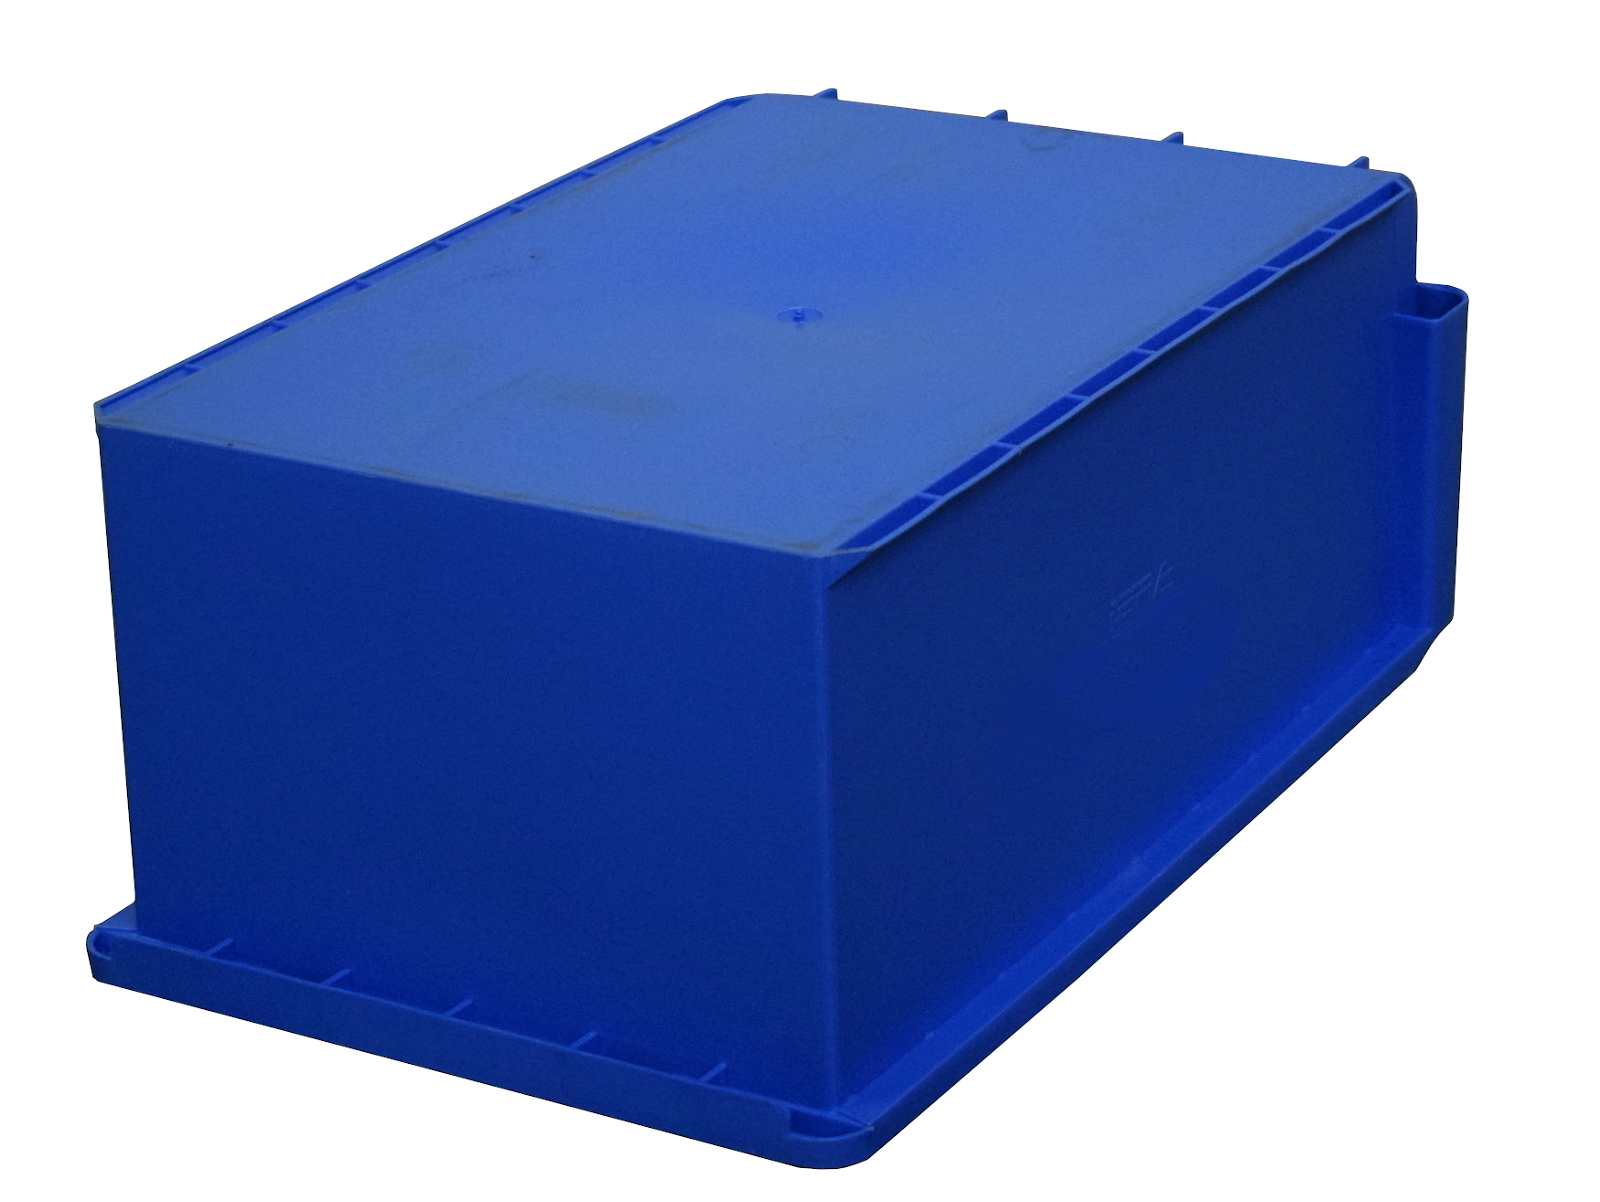 4 x AUER Sichtlagerkiste Eurobox Stapelkasten Regalbox Blau 500x310x200mm 